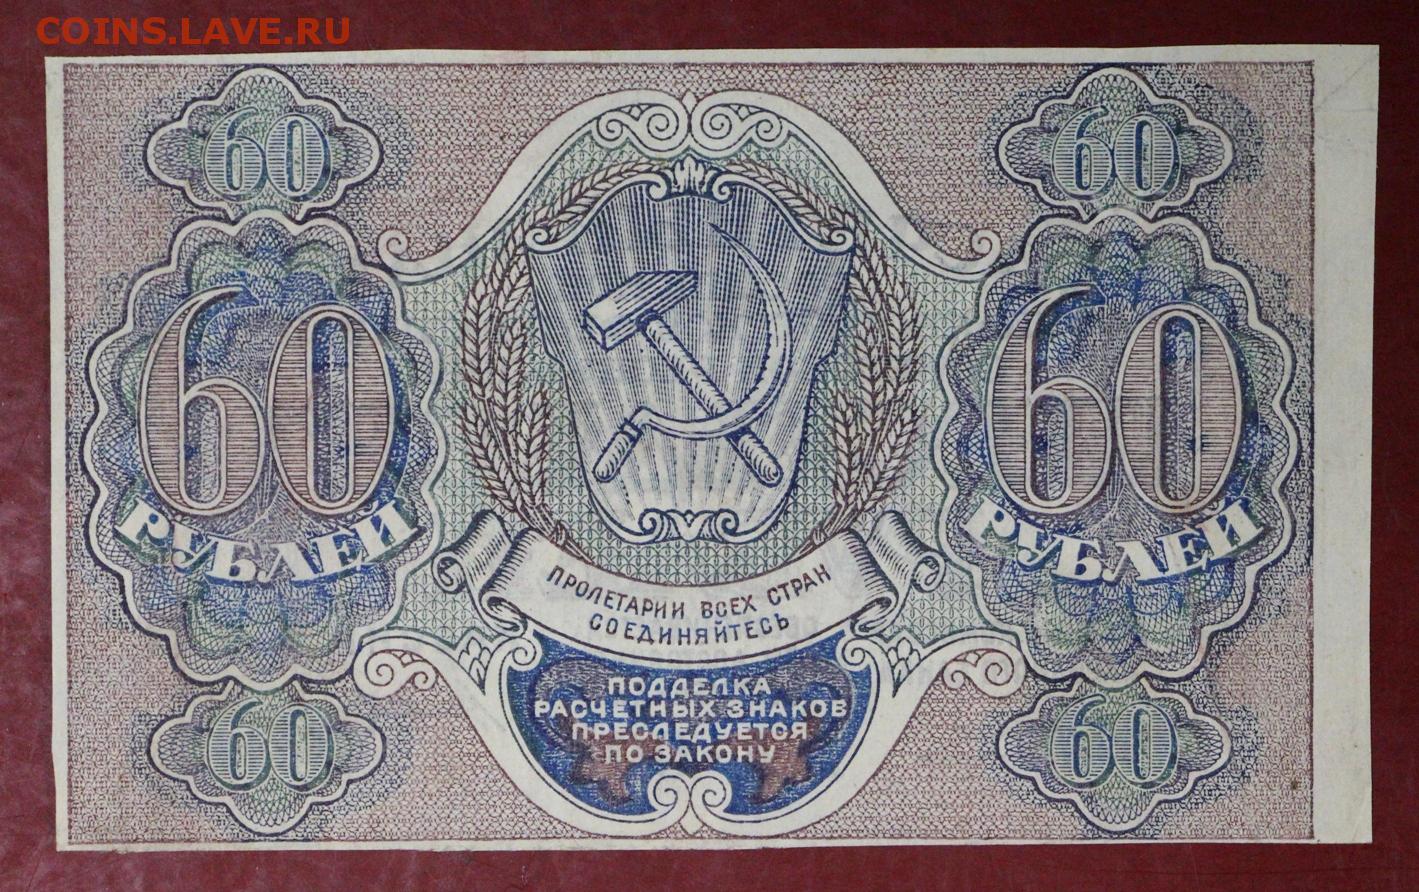 Что стоит 60 рублей. Расчётный знак 60 рублей 1919 года. 60 Рублей фотографий. 60 Рублей 1919 лист. 60 Рублей картинка.